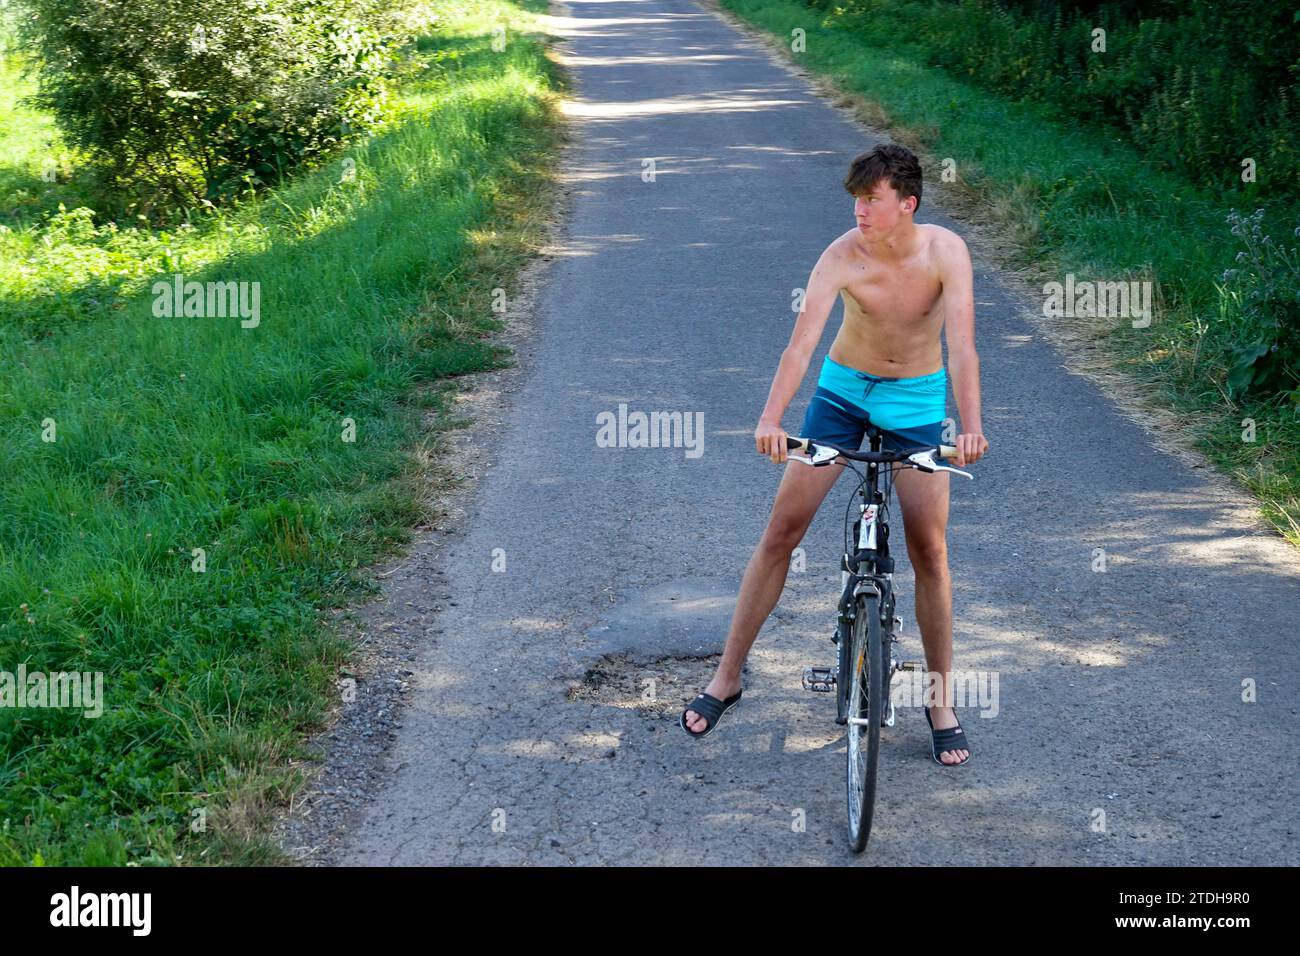 Junger Mann allein 20 auf einem Fahrrad auf einer Landstraße, Sommer, nur in kurzen Hosen Fahrrad ohne Helm fahren, heißes Wetter Stockfoto